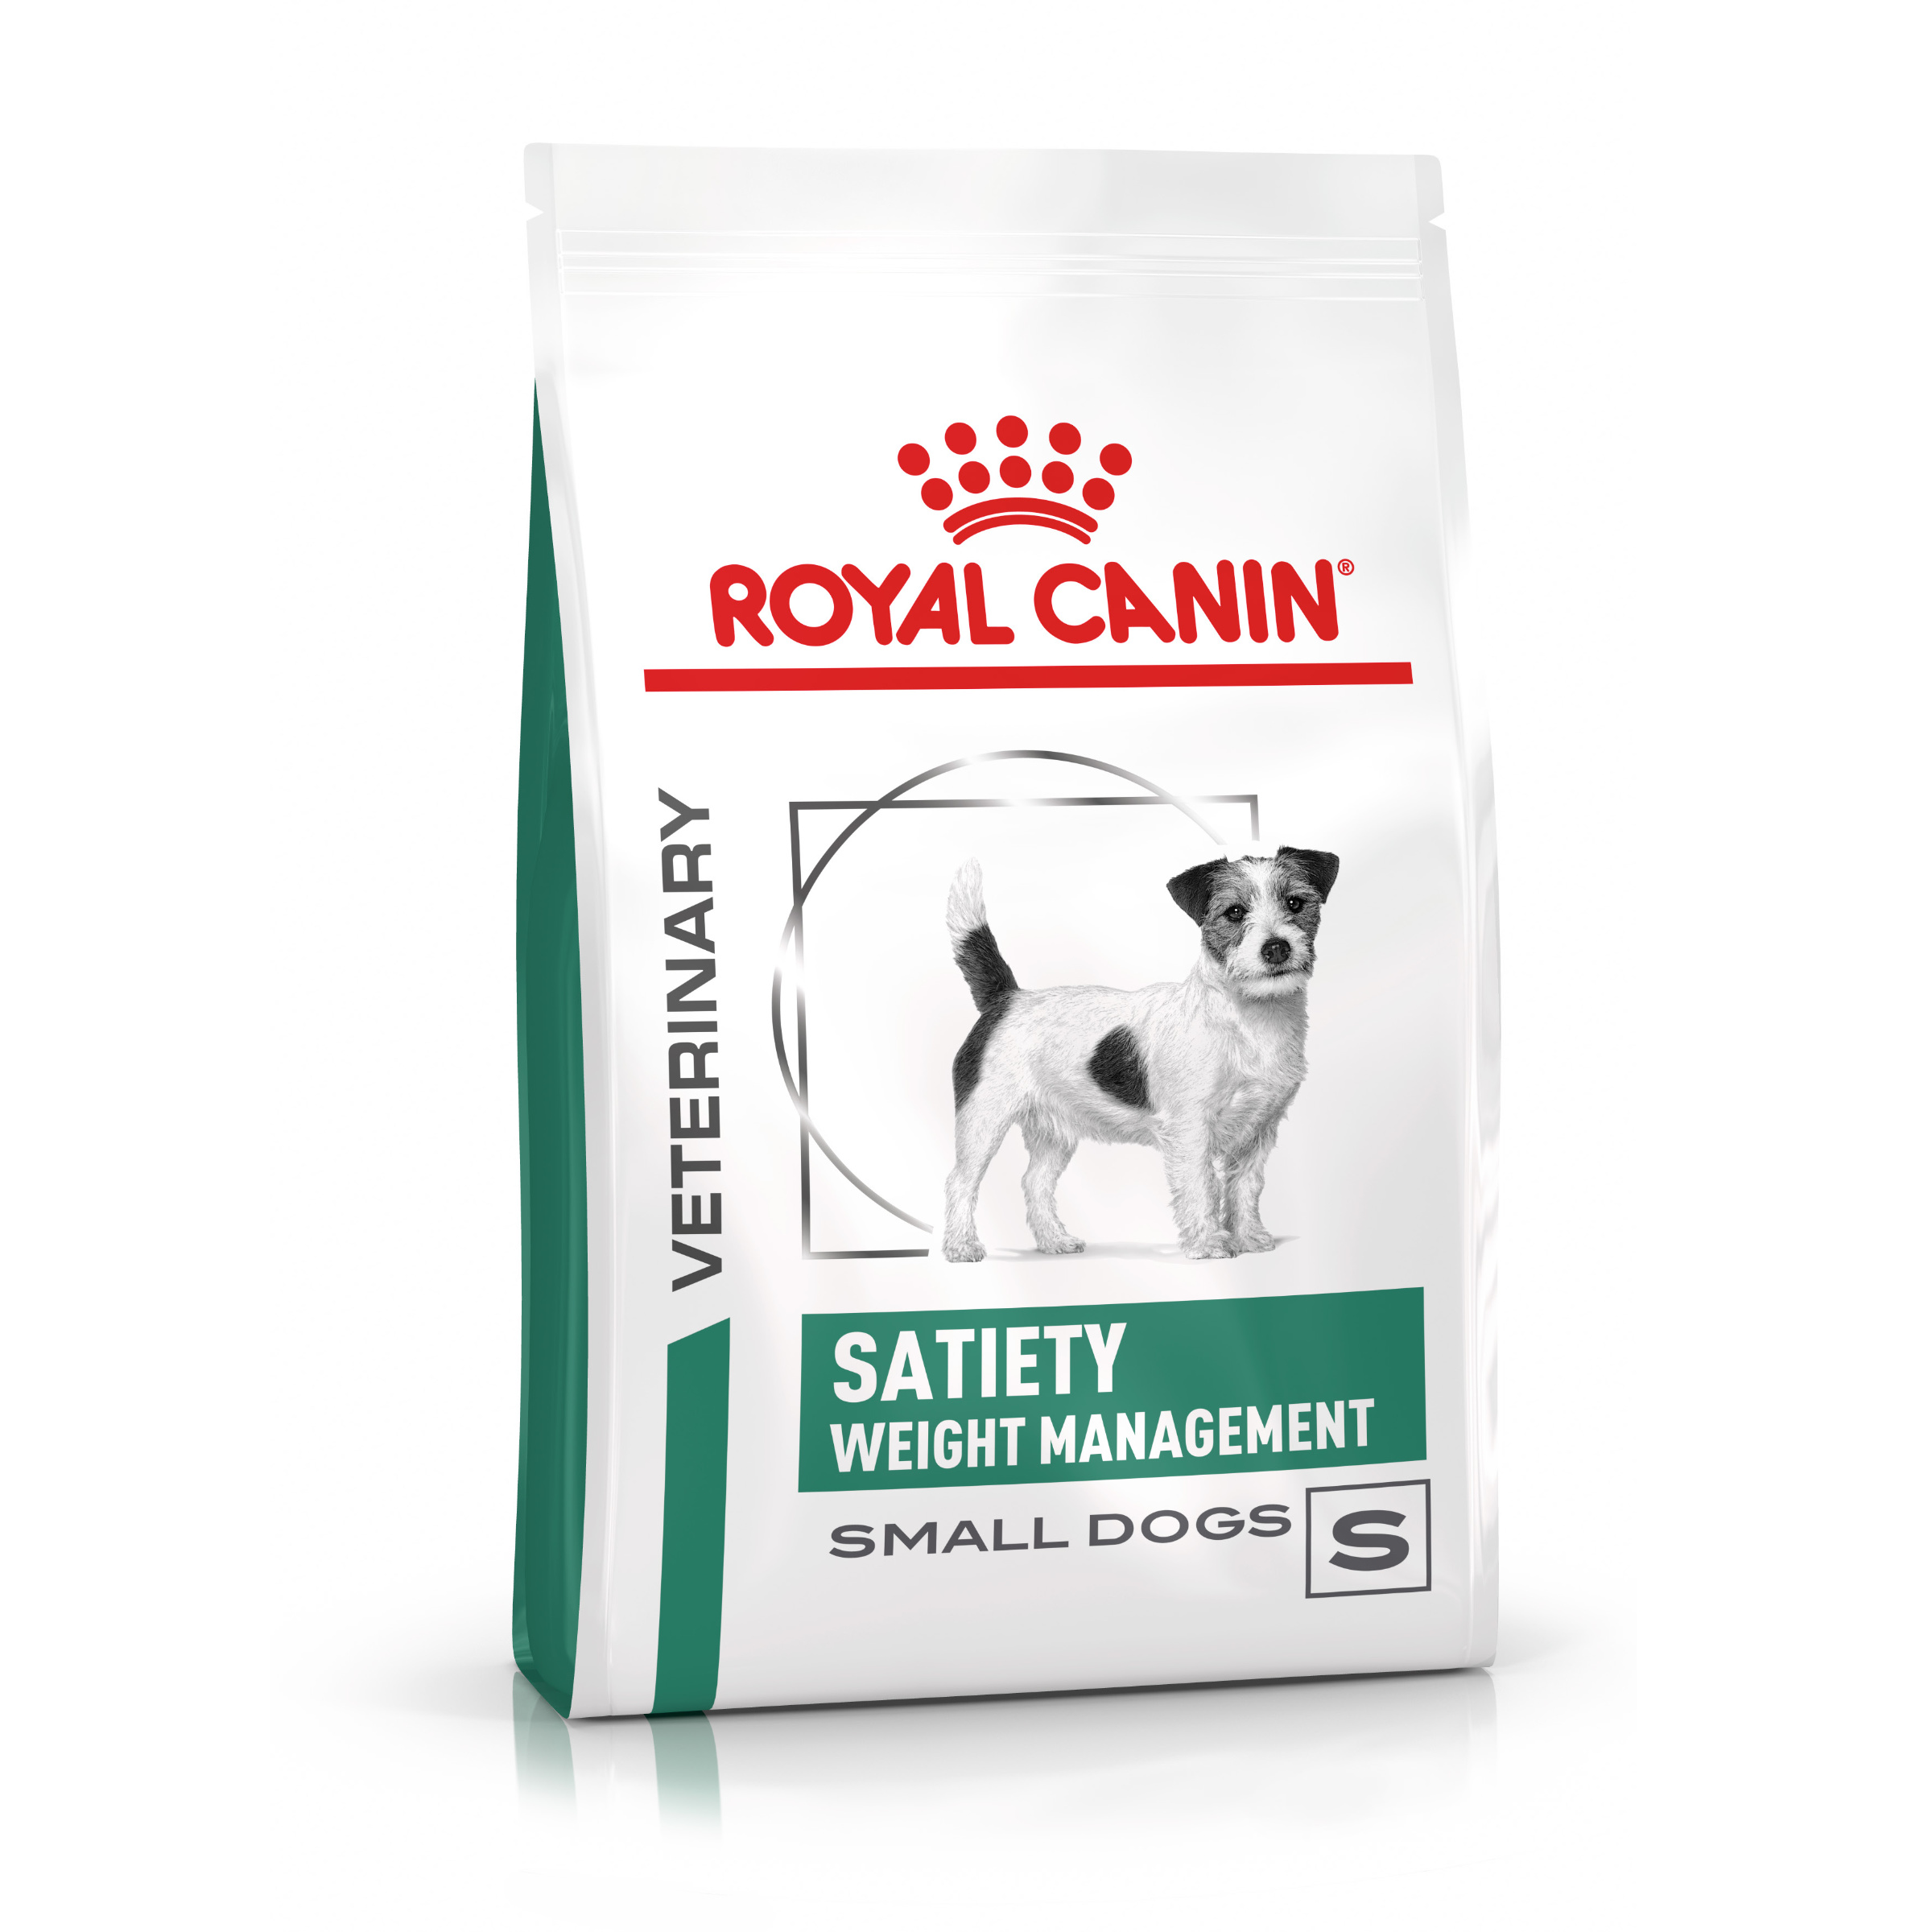 ROYAL CANIN Veterinary SATIETY SMALL DOGS Trockenfutter für Hunde 1,5 kg